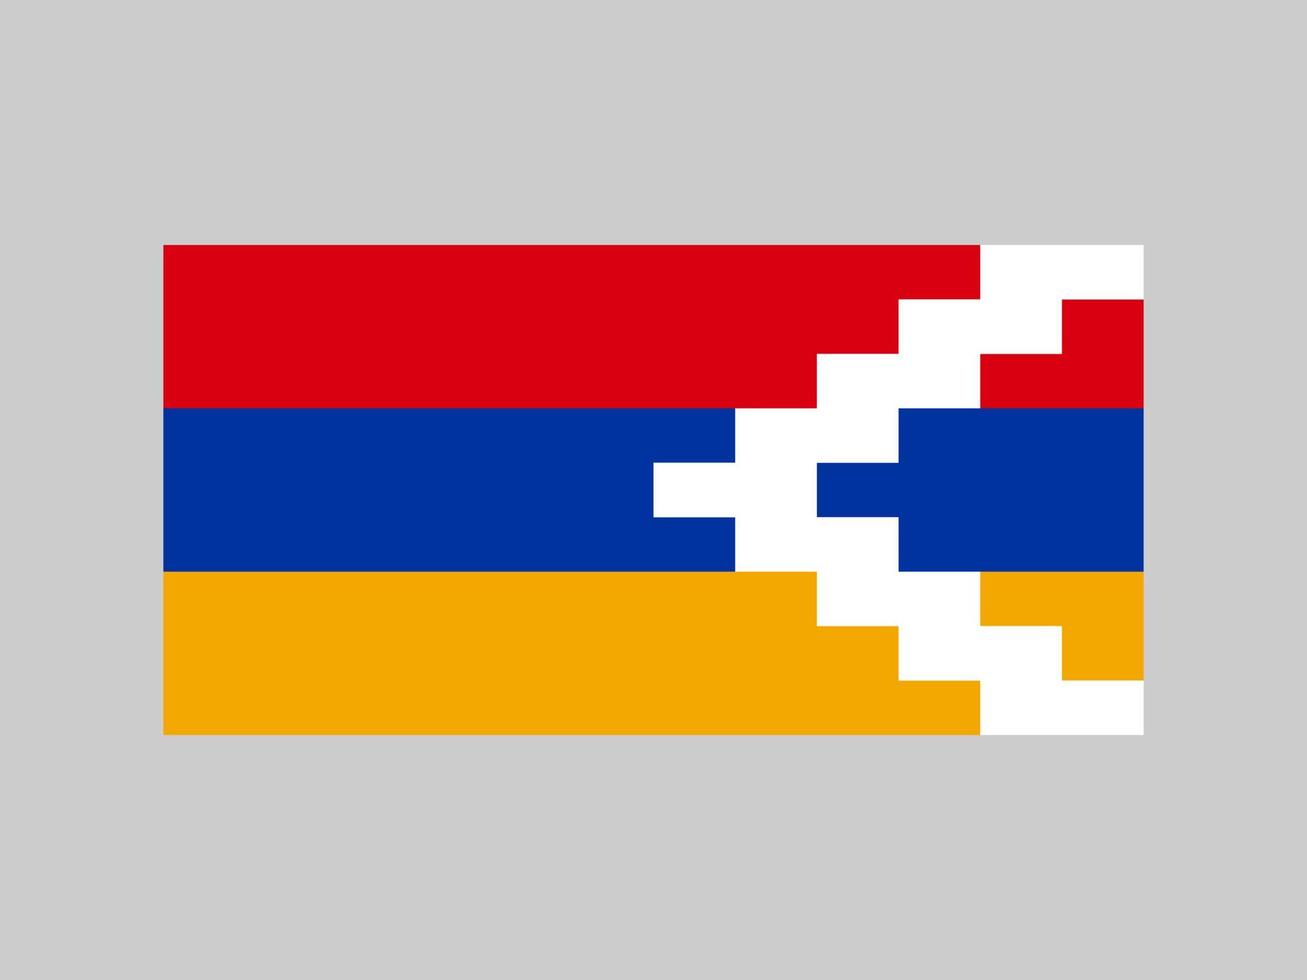 bandiera dell'artsakh, colori ufficiali e proporzione. illustrazione vettoriale. vettore